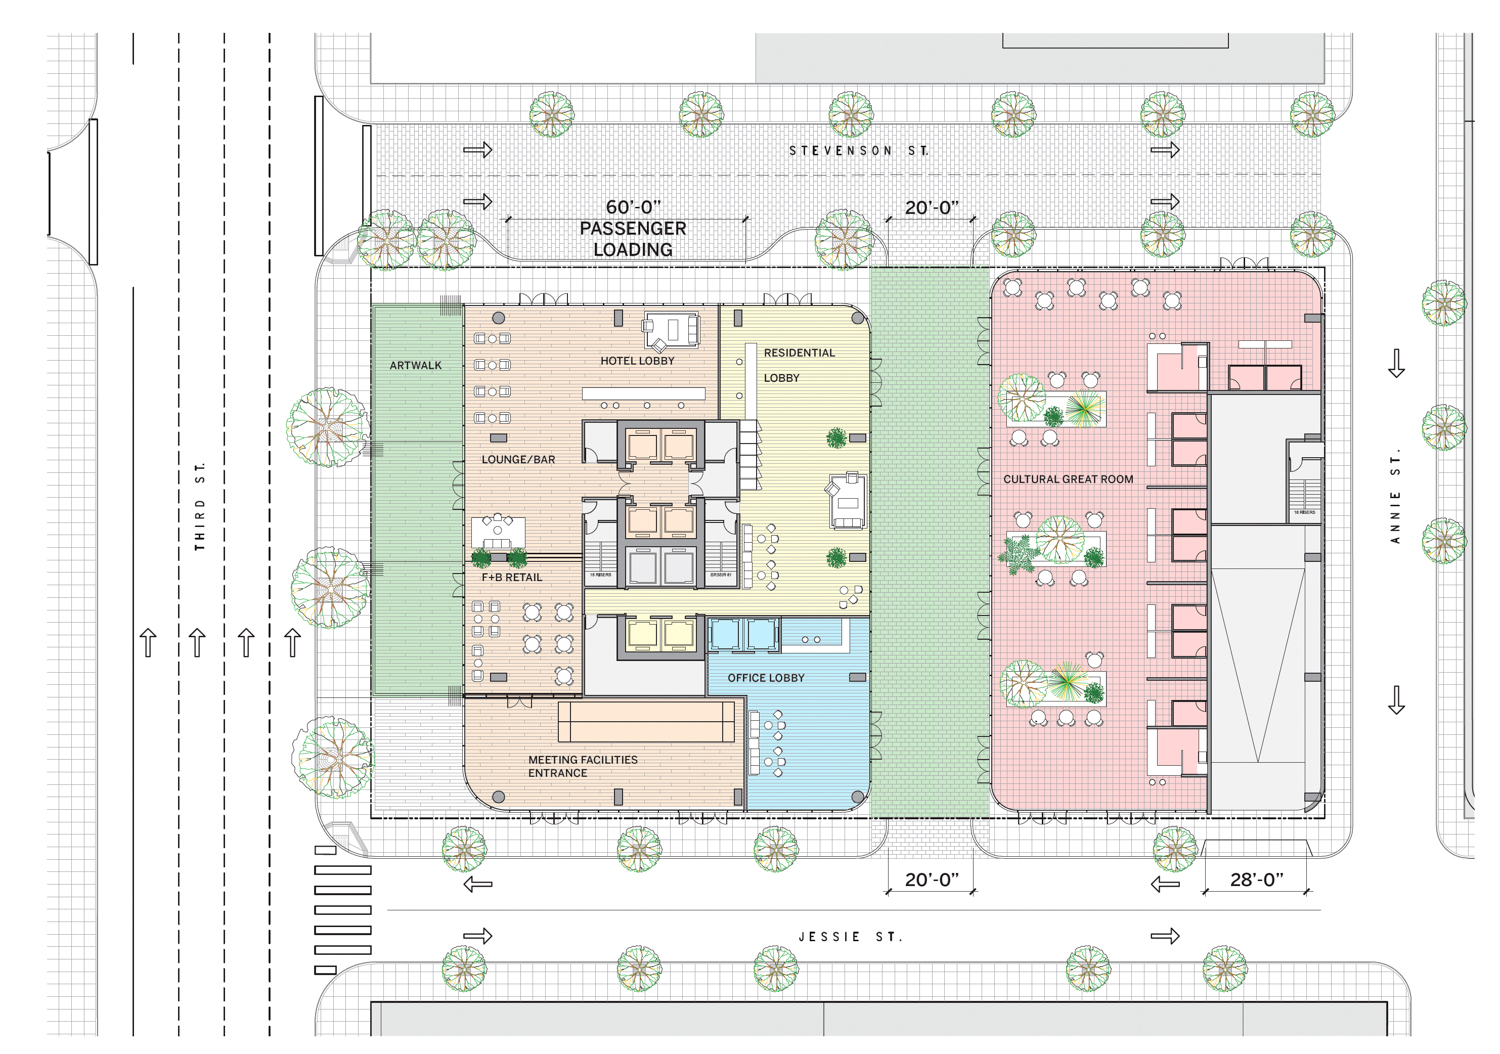 45-53 Third Street ground level floor plan, elevation by SOM